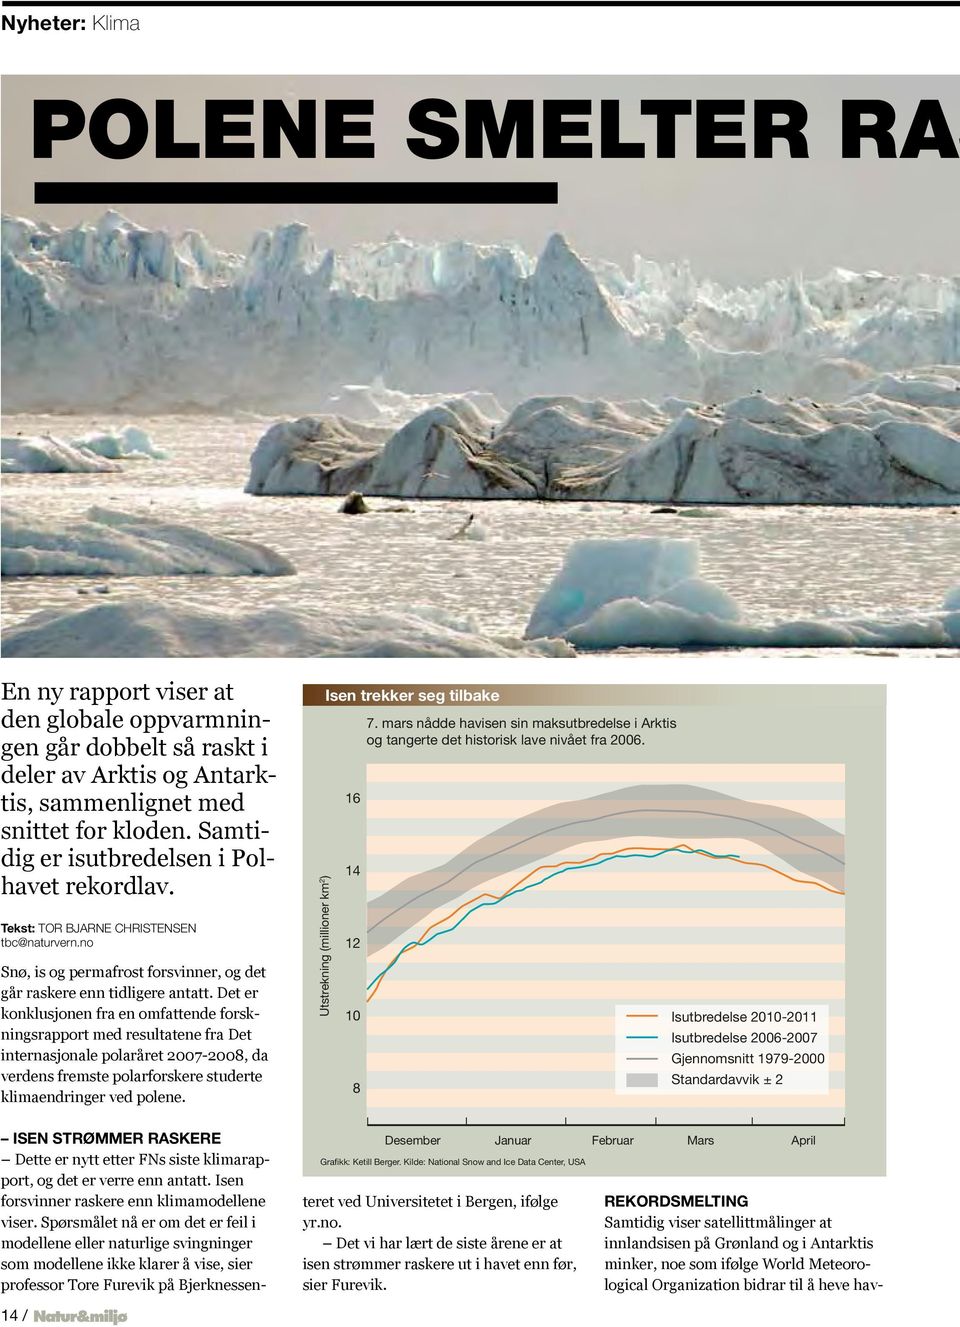 Det er konklusjonen fra en omfattende forskningsrapport med resultatene fra Det internasjonale polaråret 2007-2008, da verdens fremste polarforskere studerte klimaendringer ved polene.